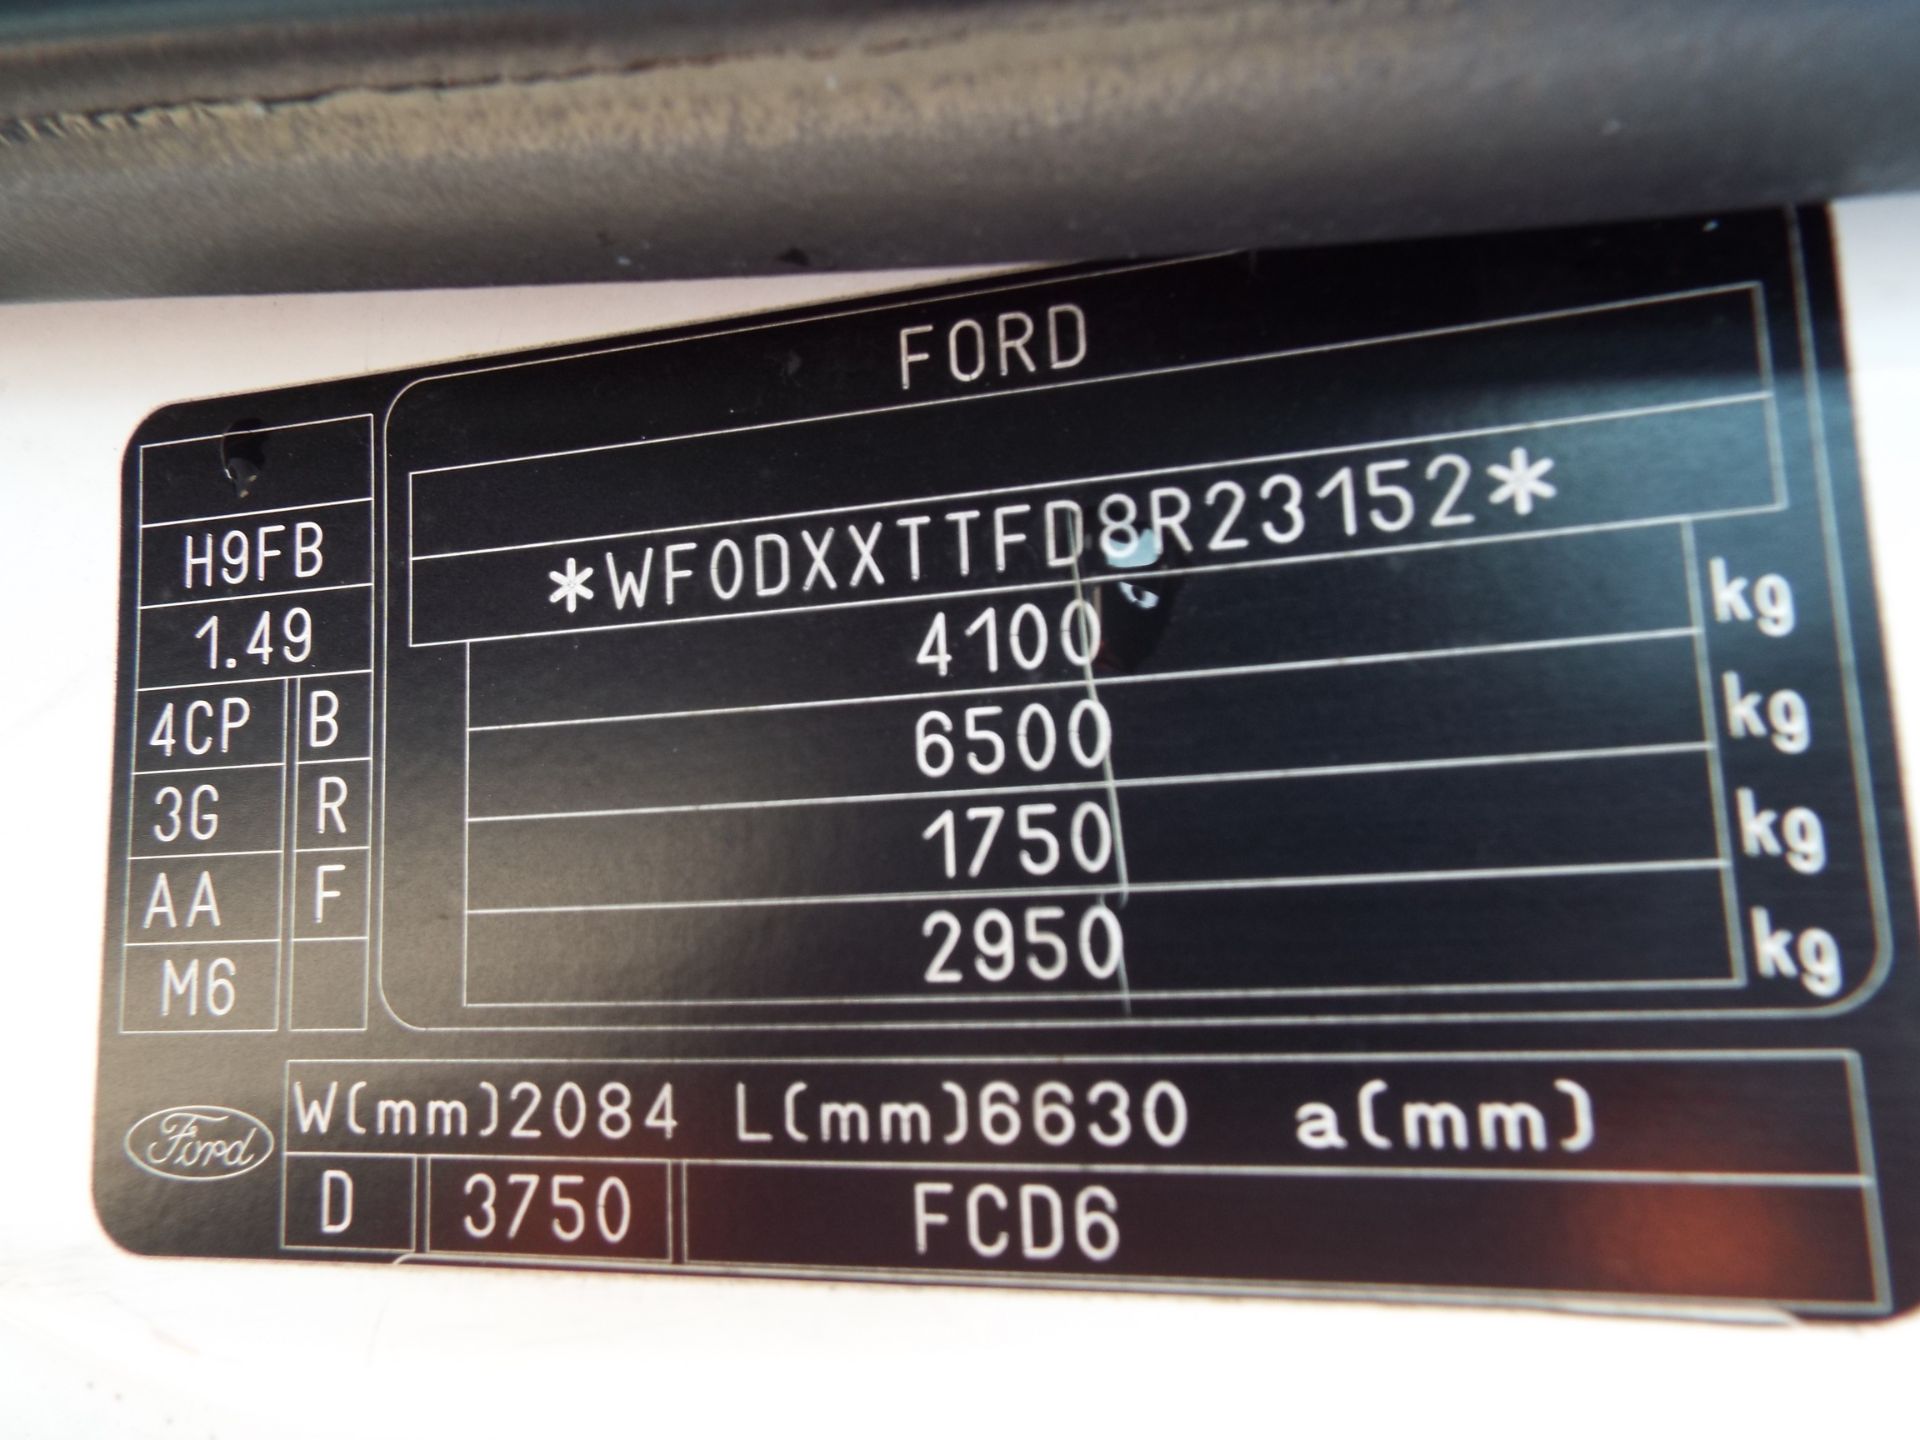 Ford Transit LWB 17 Seat Minibus - Image 17 of 18